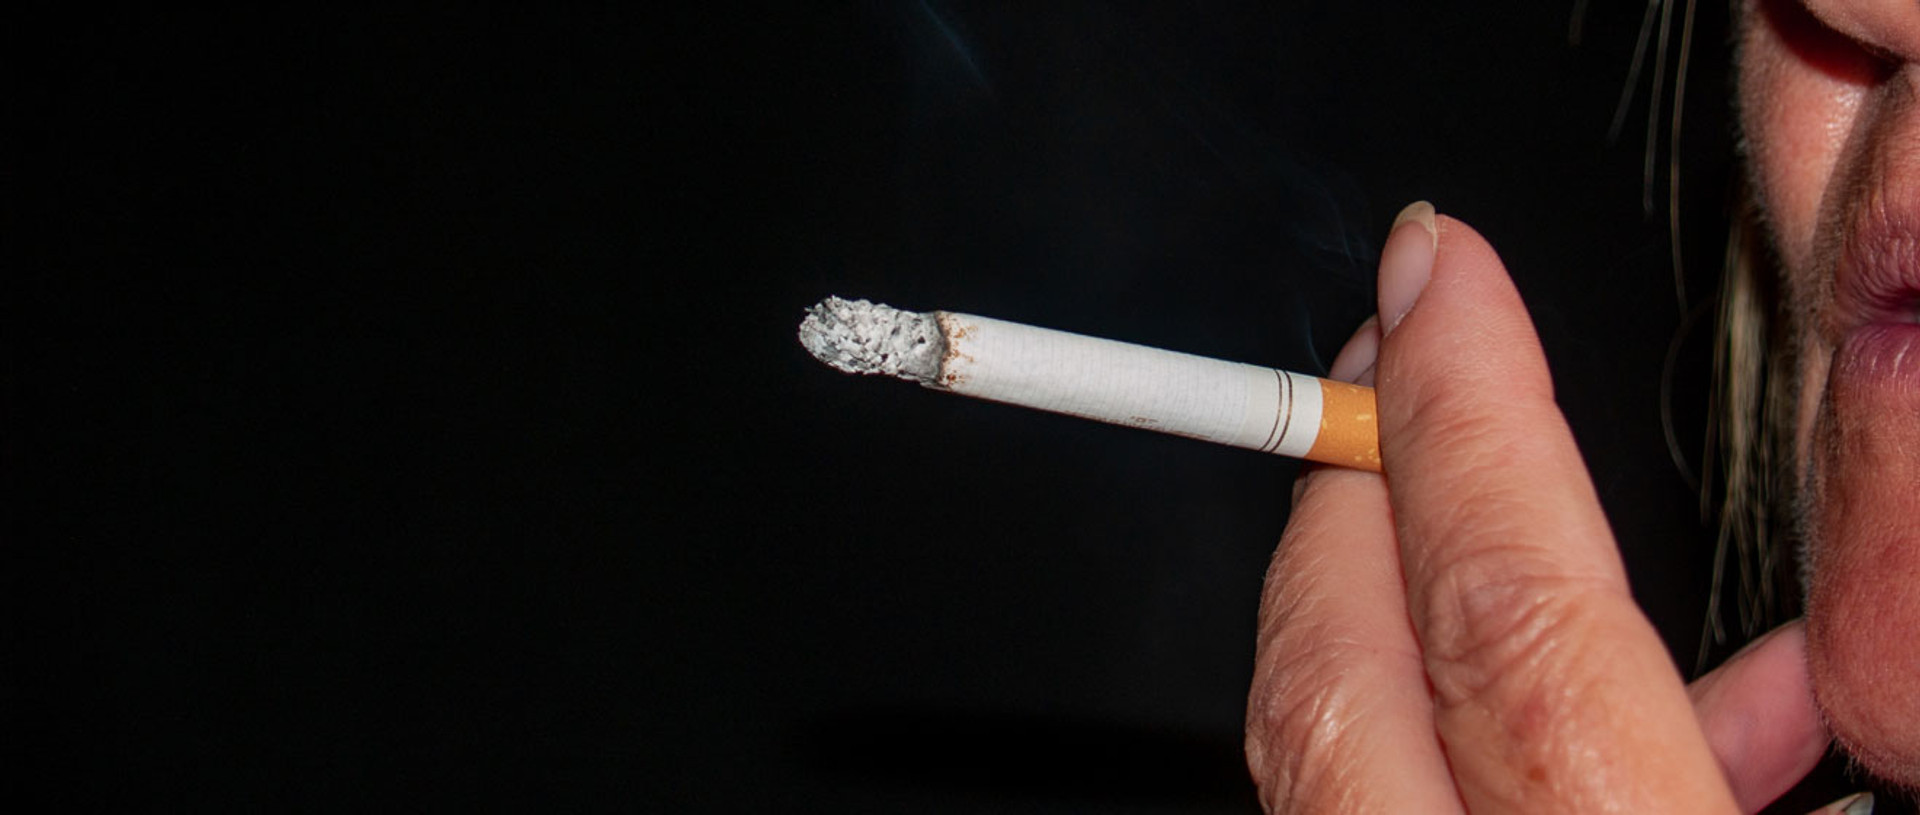 Українці й цигарки: що стається з органами та здоров’ям, як кинути палити і що їсти курцям